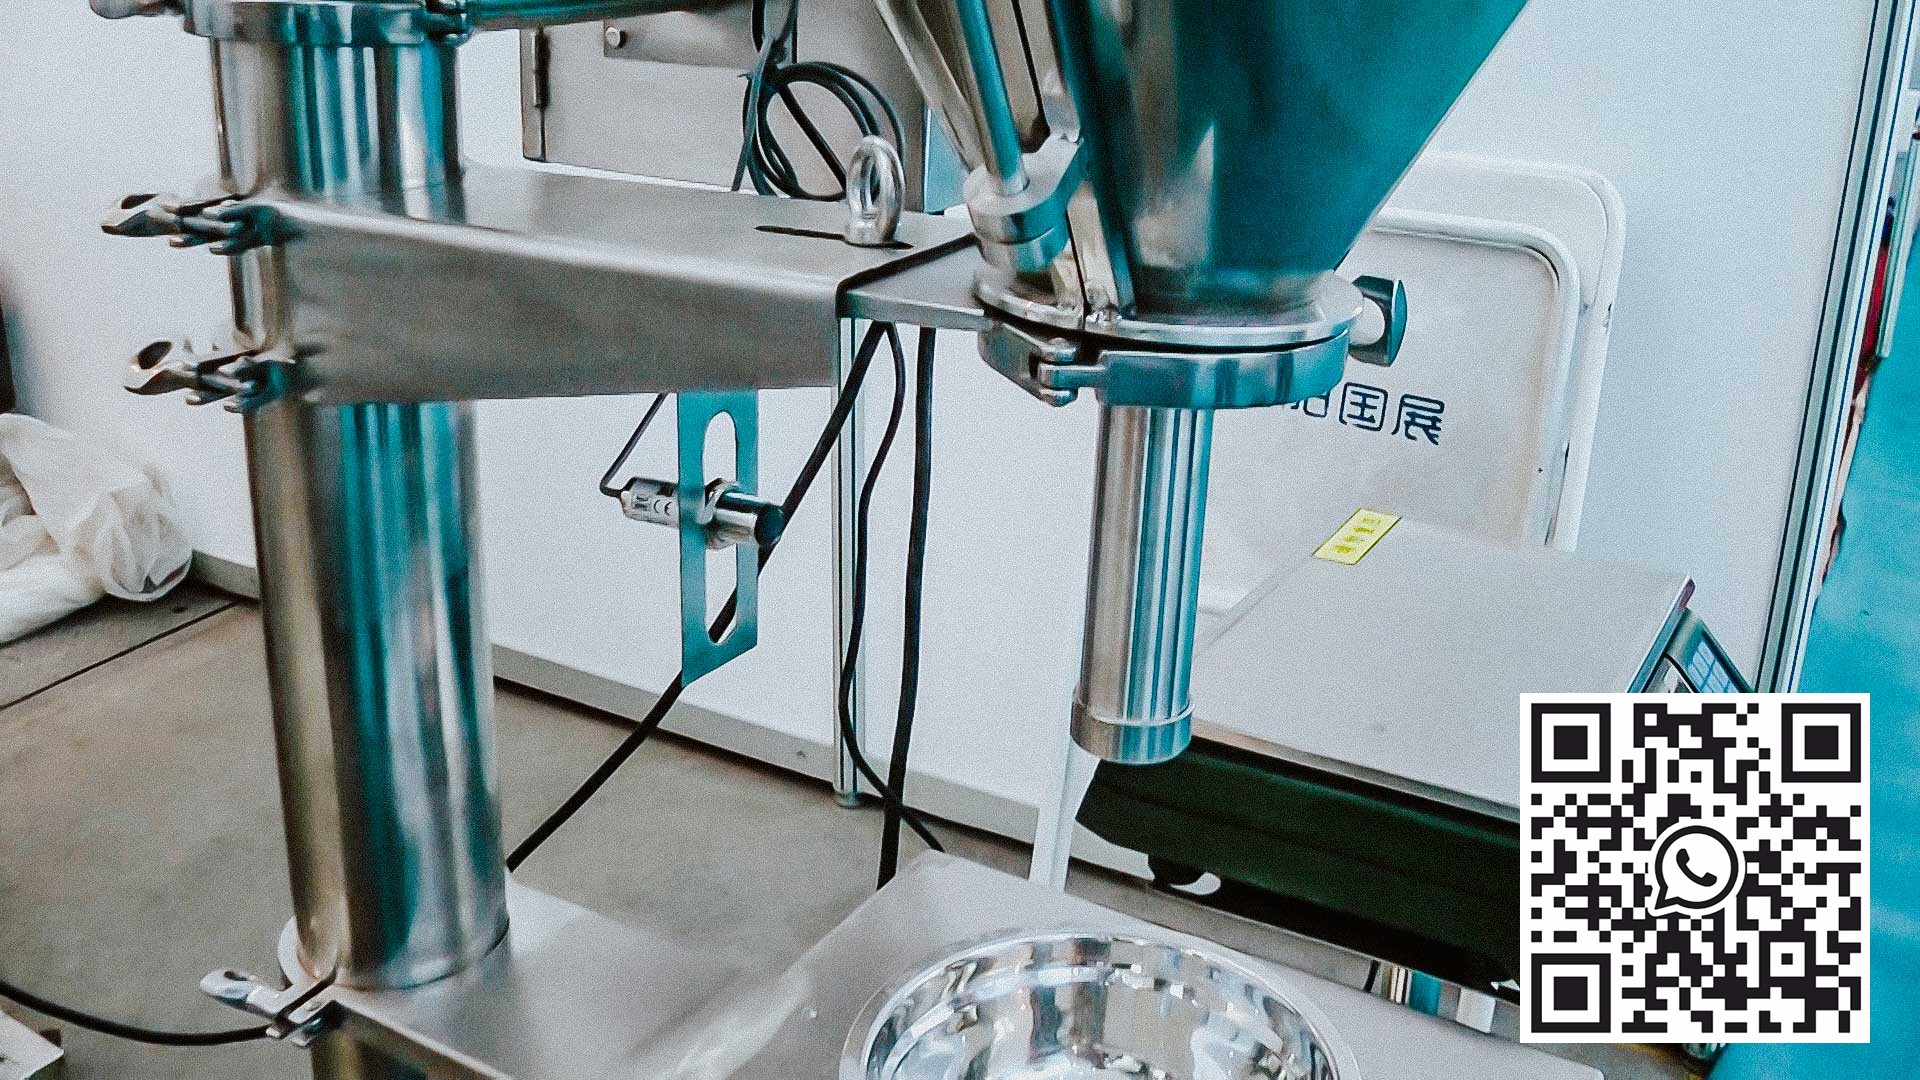 Automatisk utstyr for dosering av pulver etter vekt i plastflasker